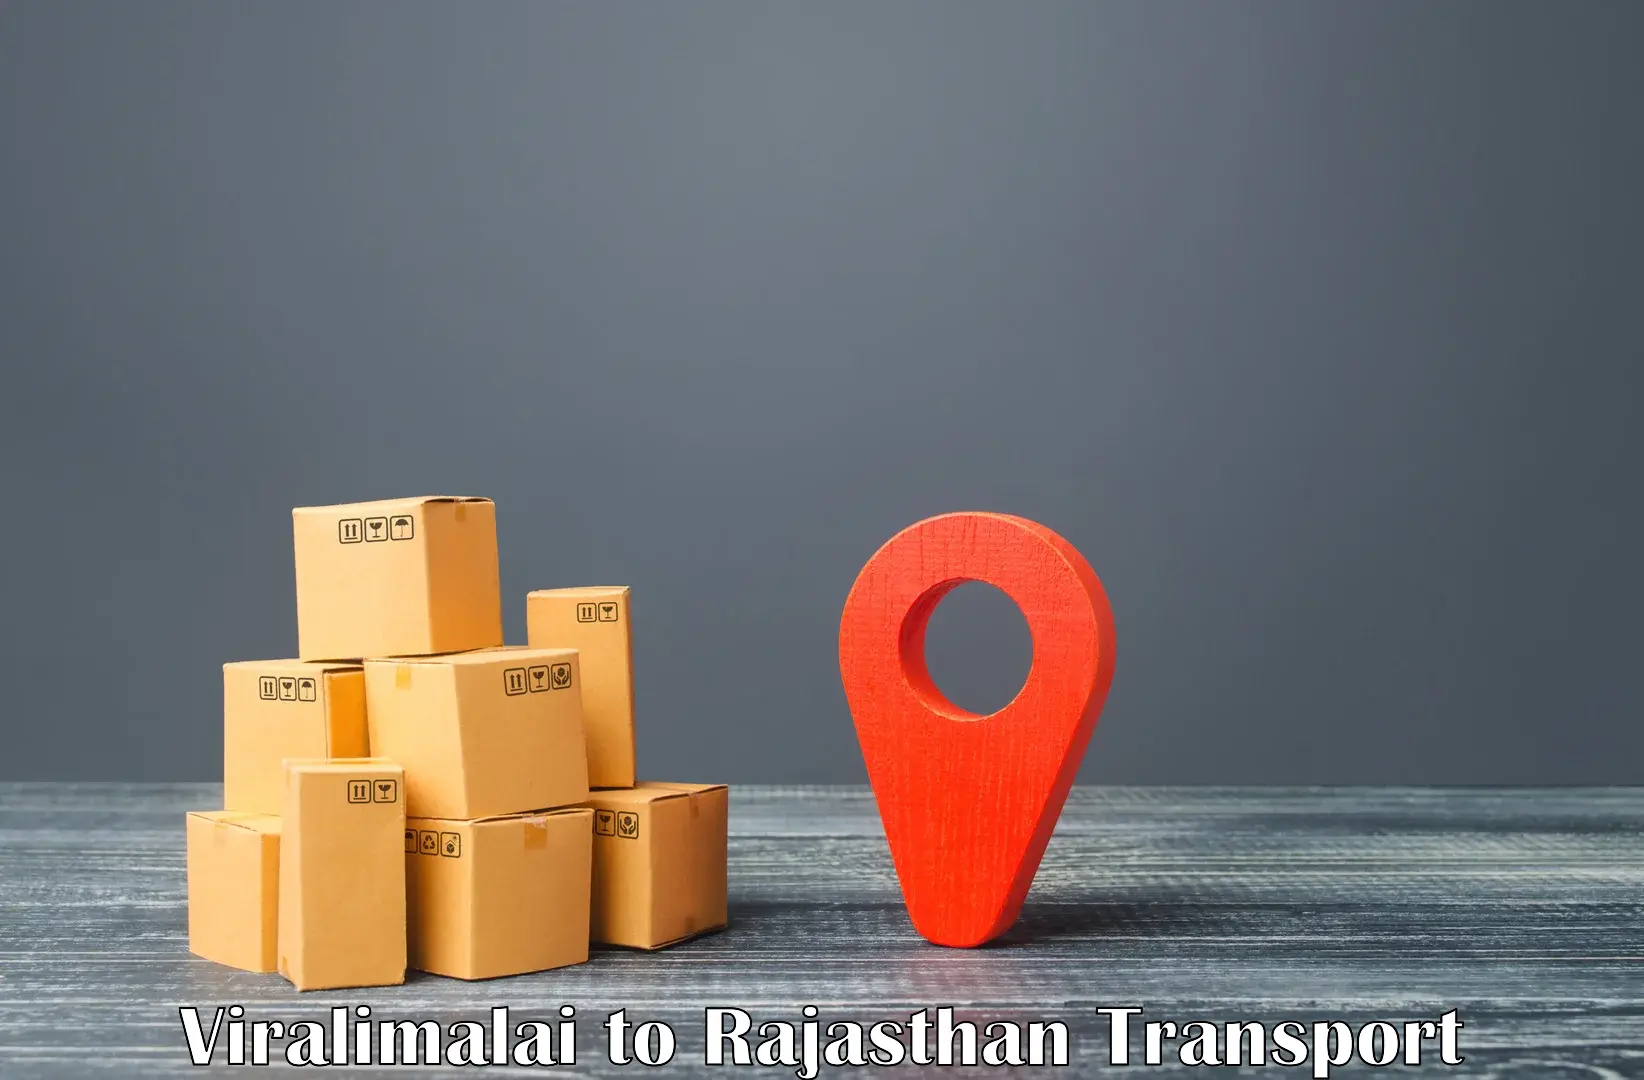 Air cargo transport services Viralimalai to Rajasthan